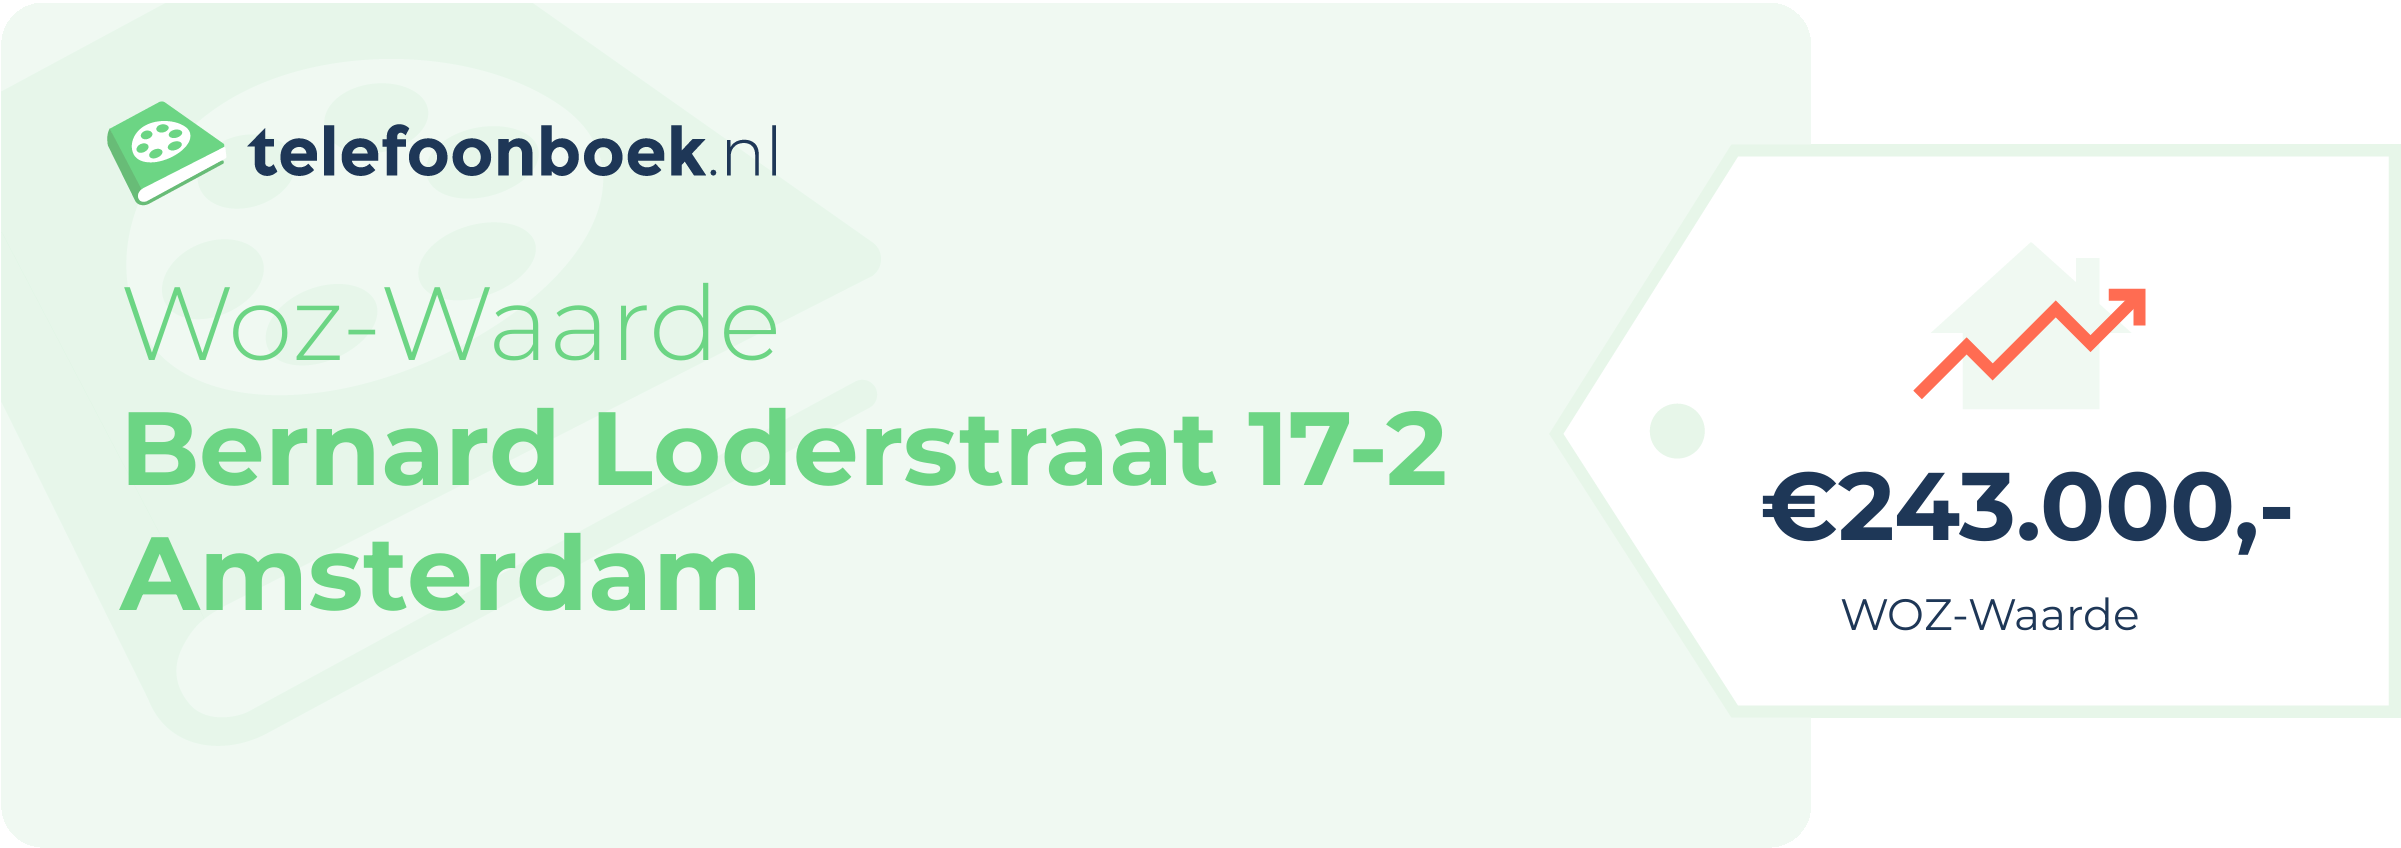 WOZ-waarde Bernard Loderstraat 17-2 Amsterdam